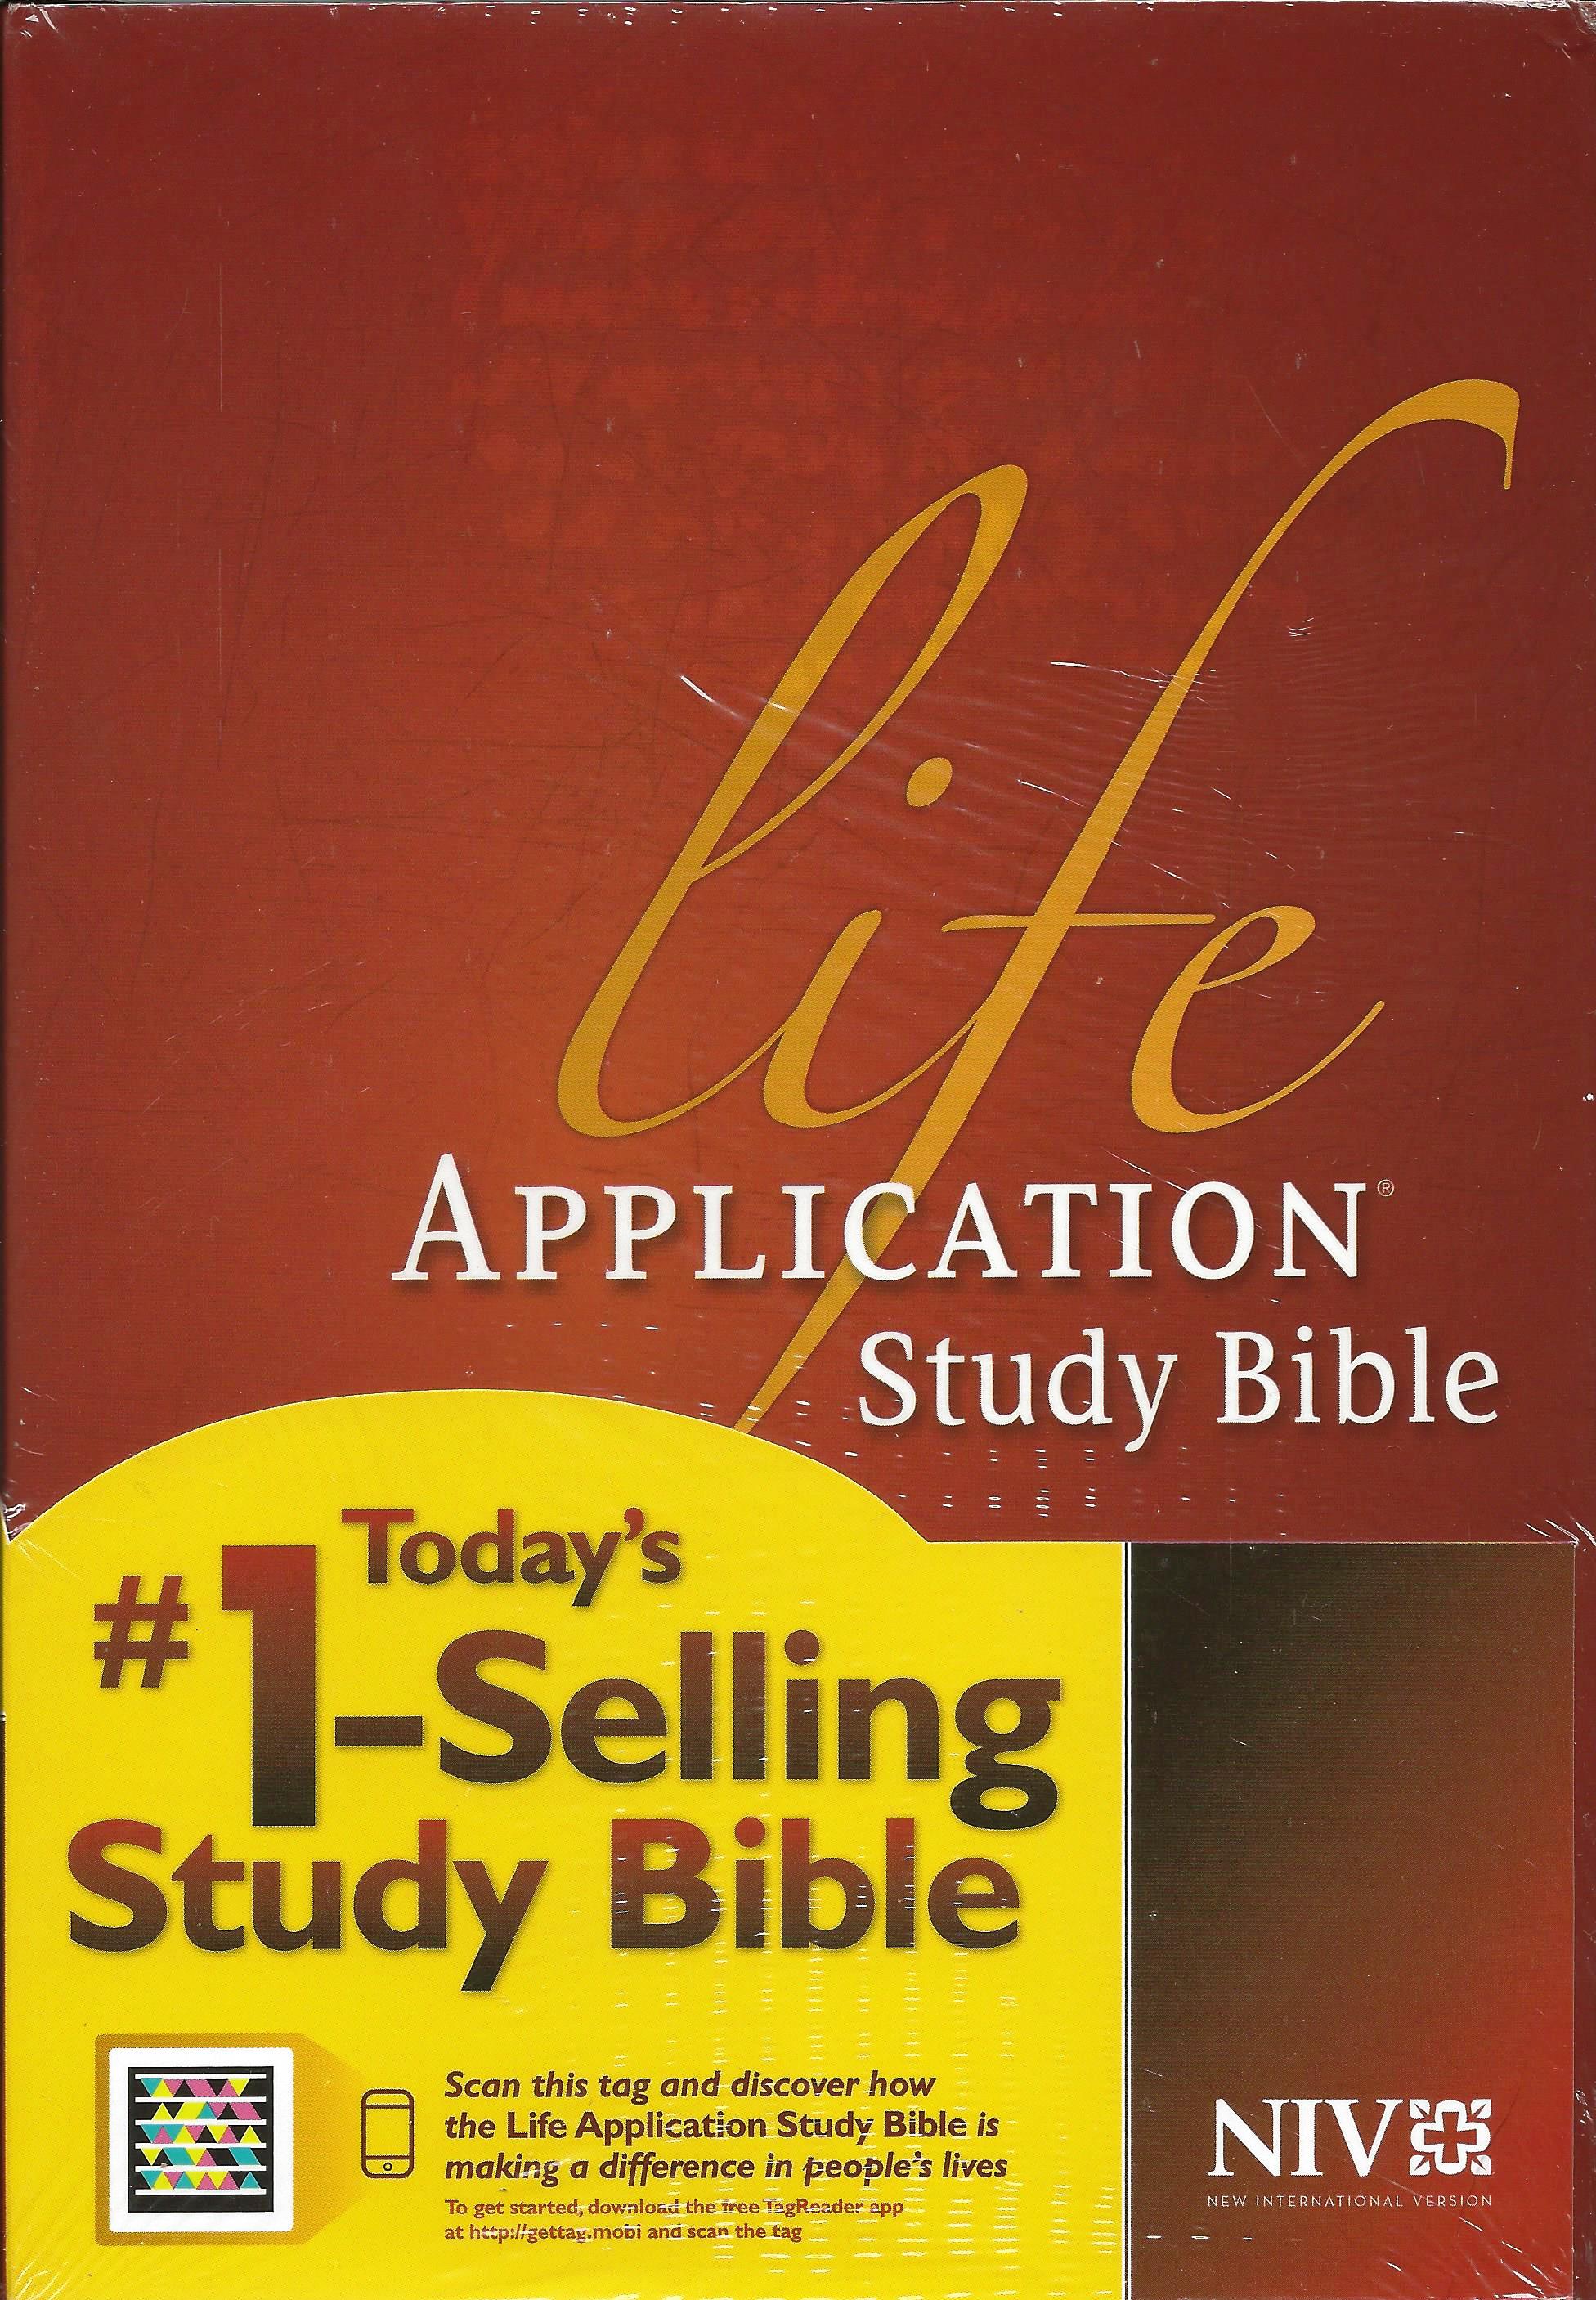 NIV LIFE APPLICATION STUDY BIBLE Hardback